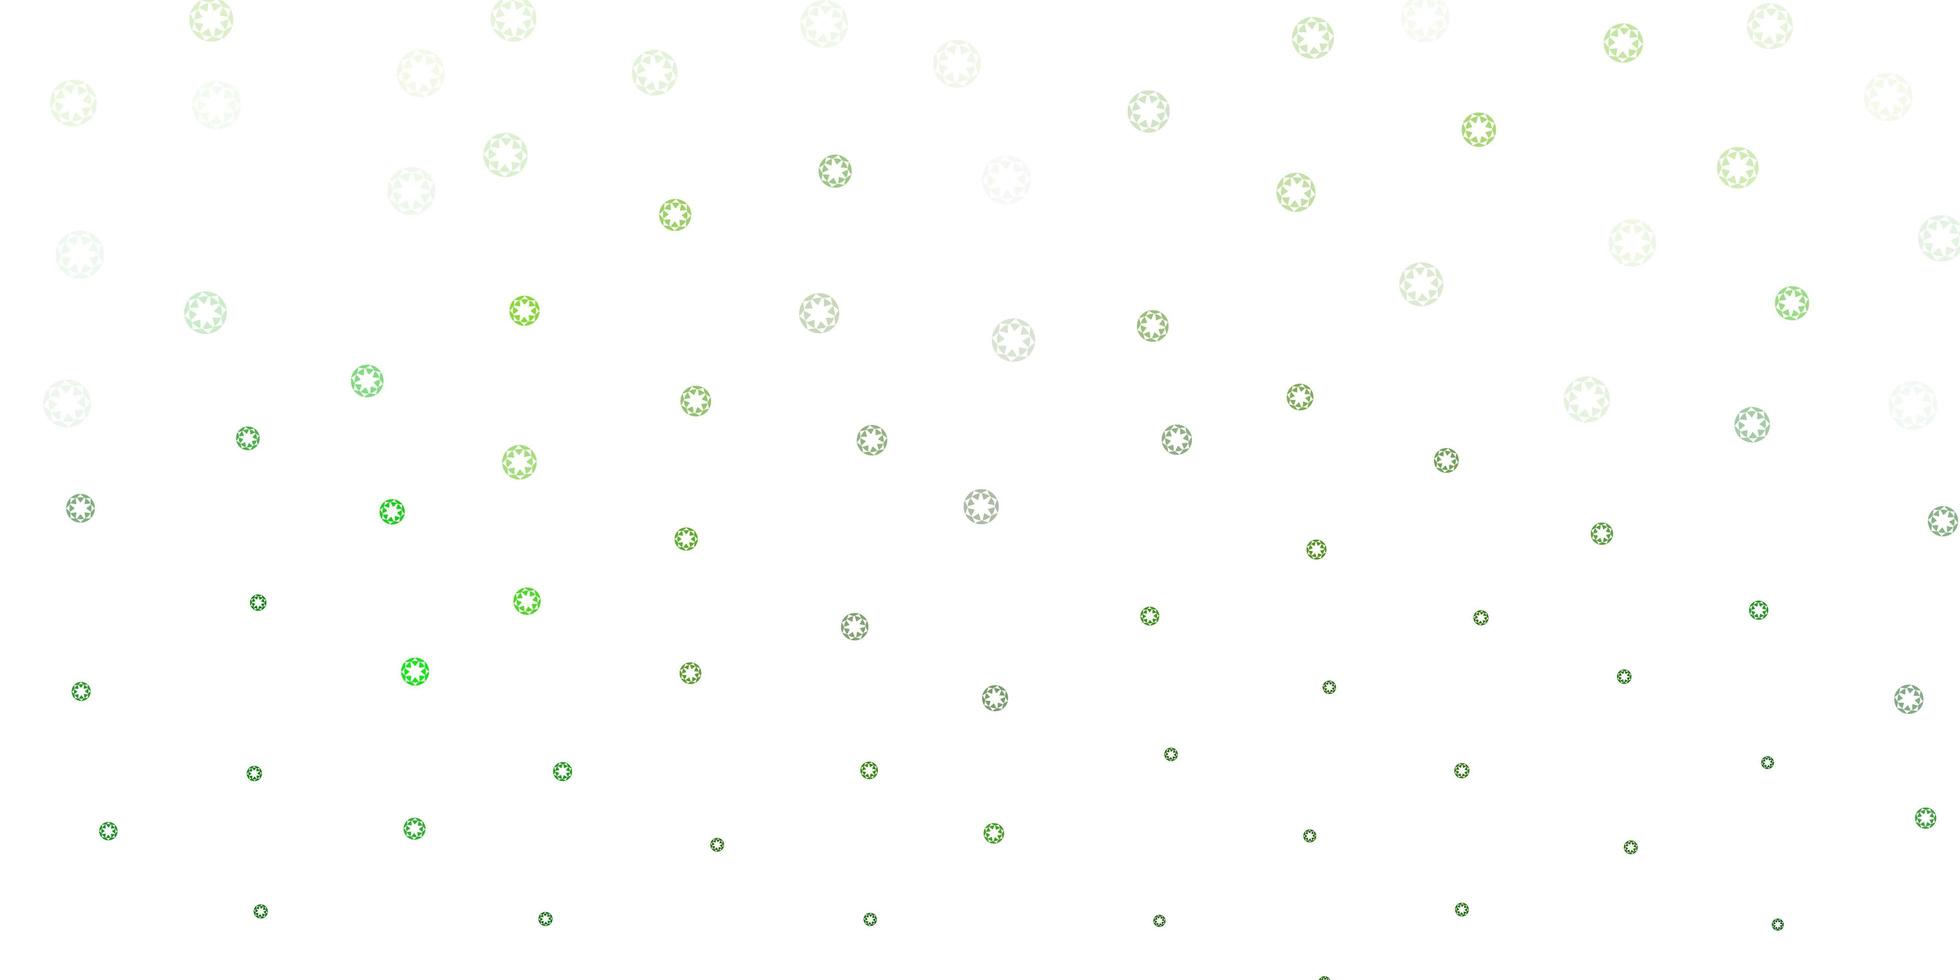 layout vettoriale verde chiaro con forme circolari.